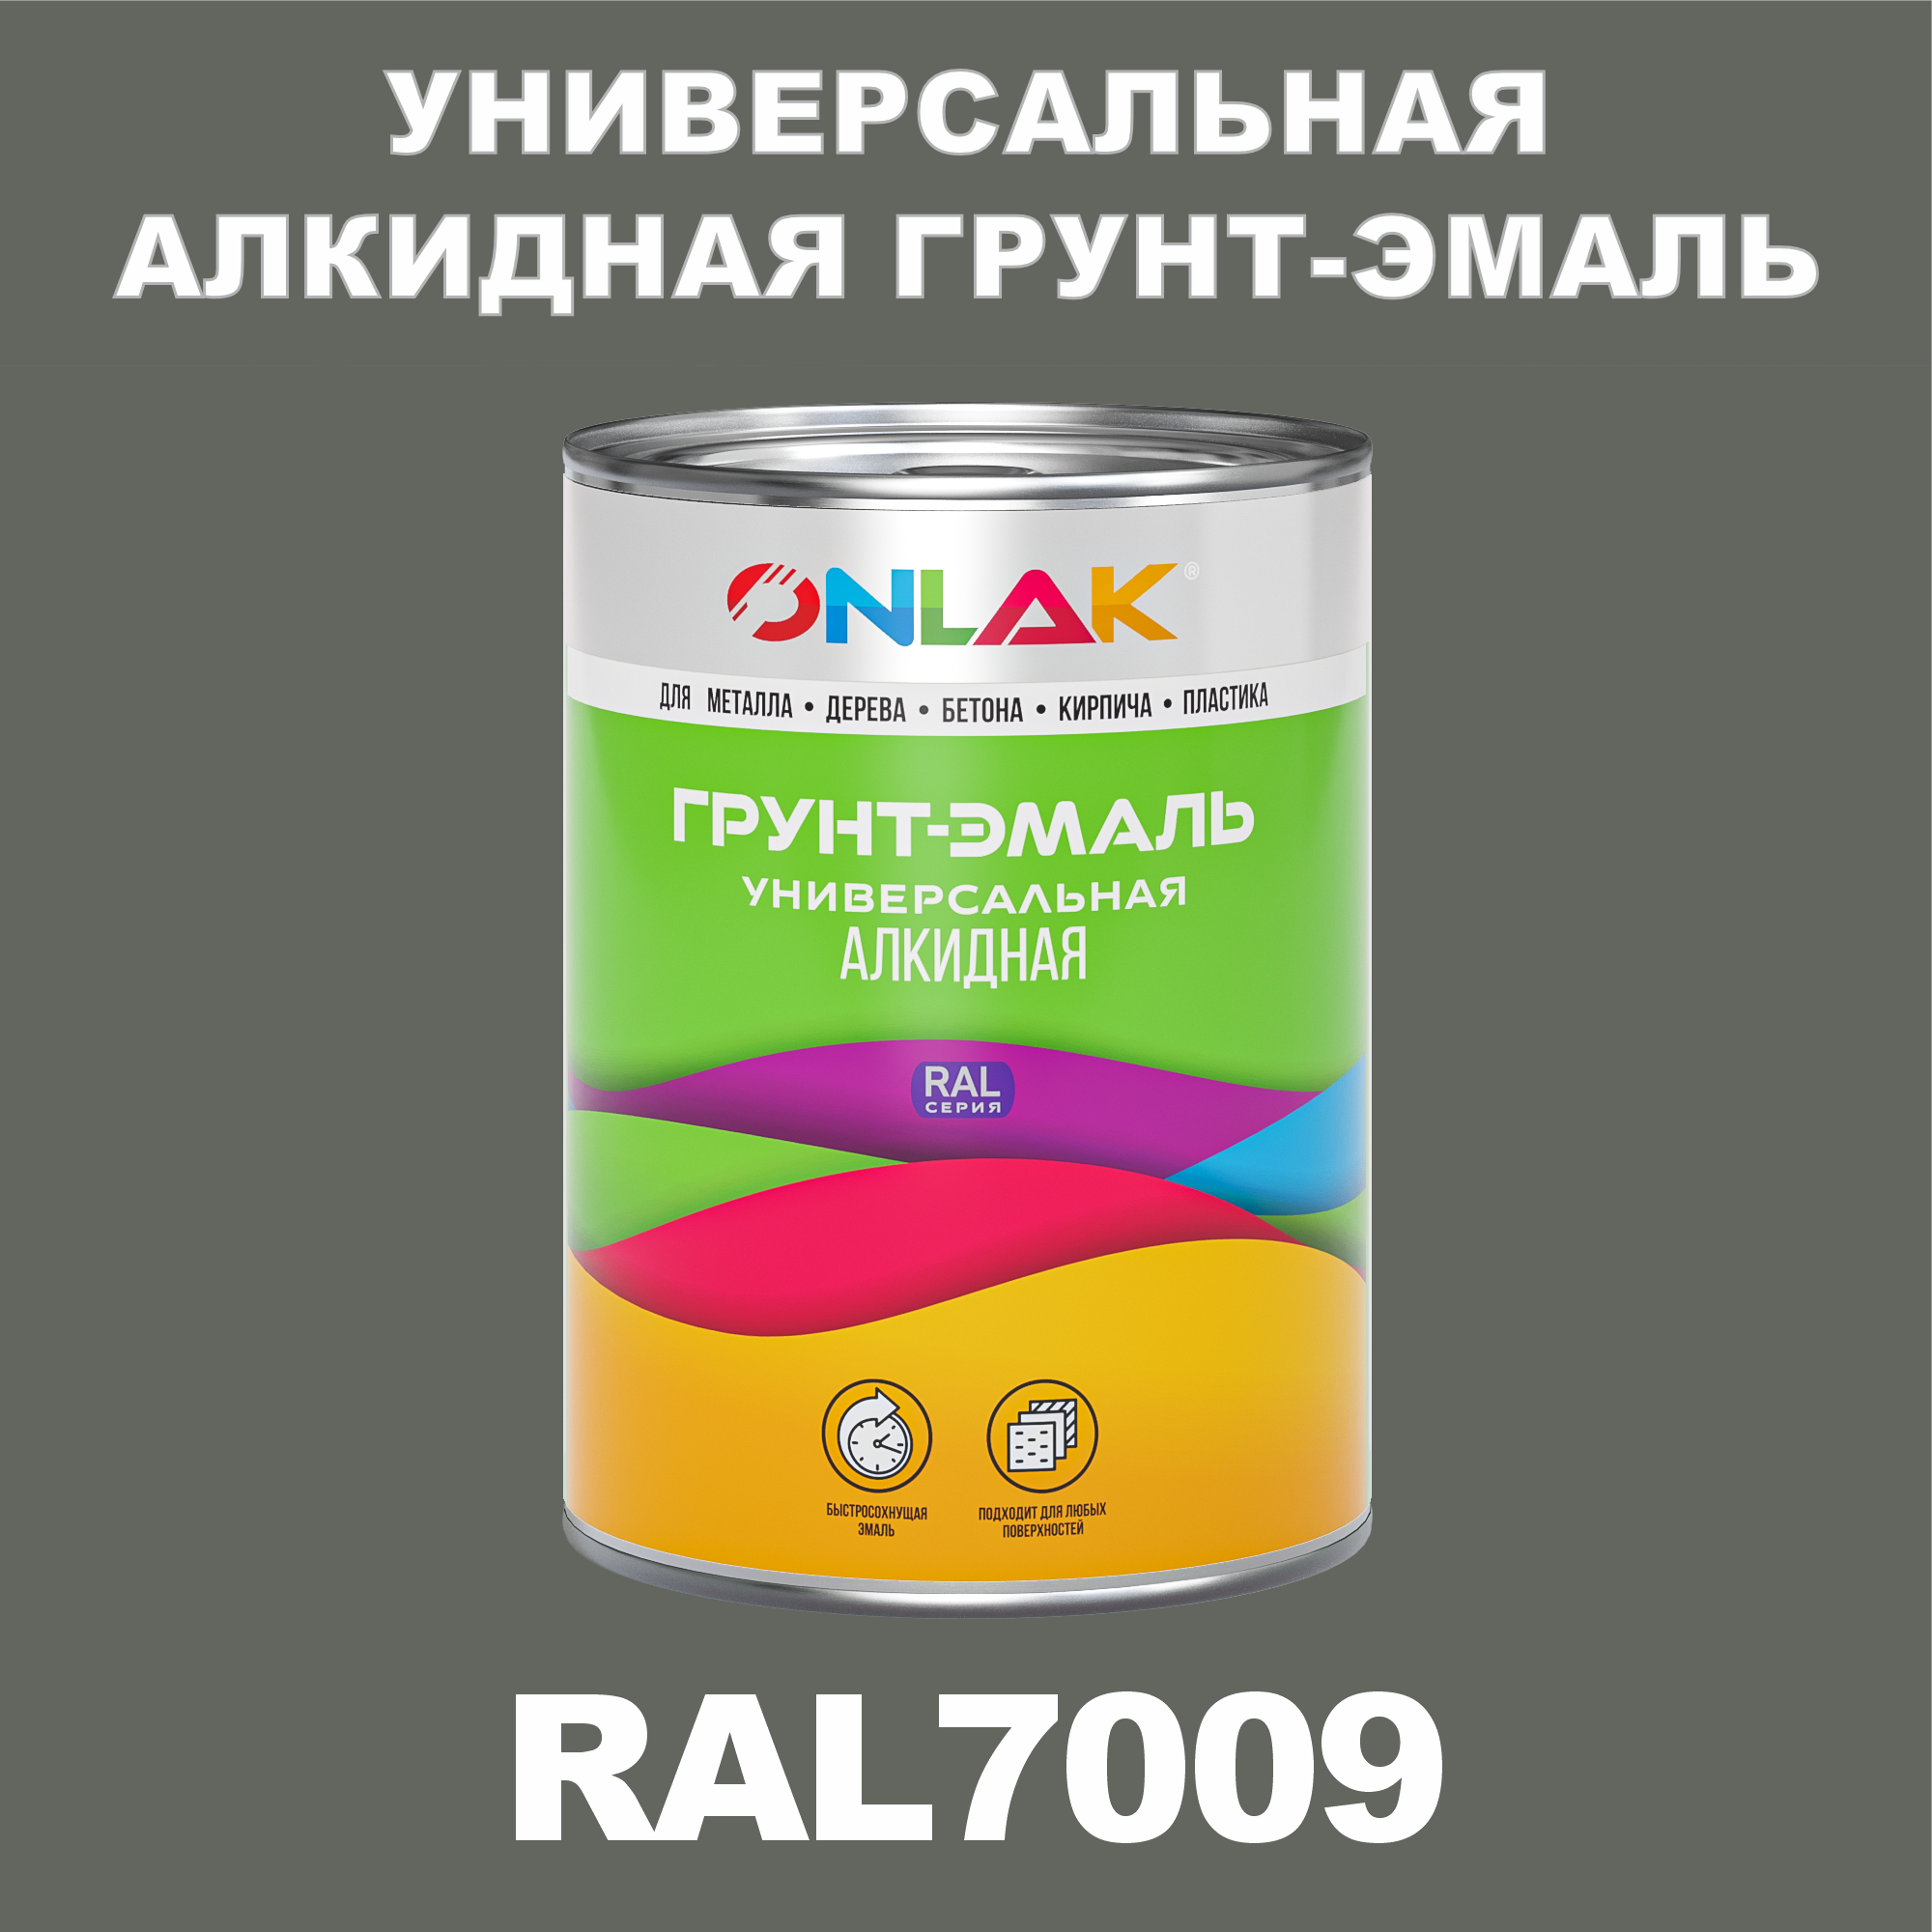 Грунт-эмаль ONLAK 1К RAL7009 антикоррозионная алкидная по металлу по ржавчине 1 кг